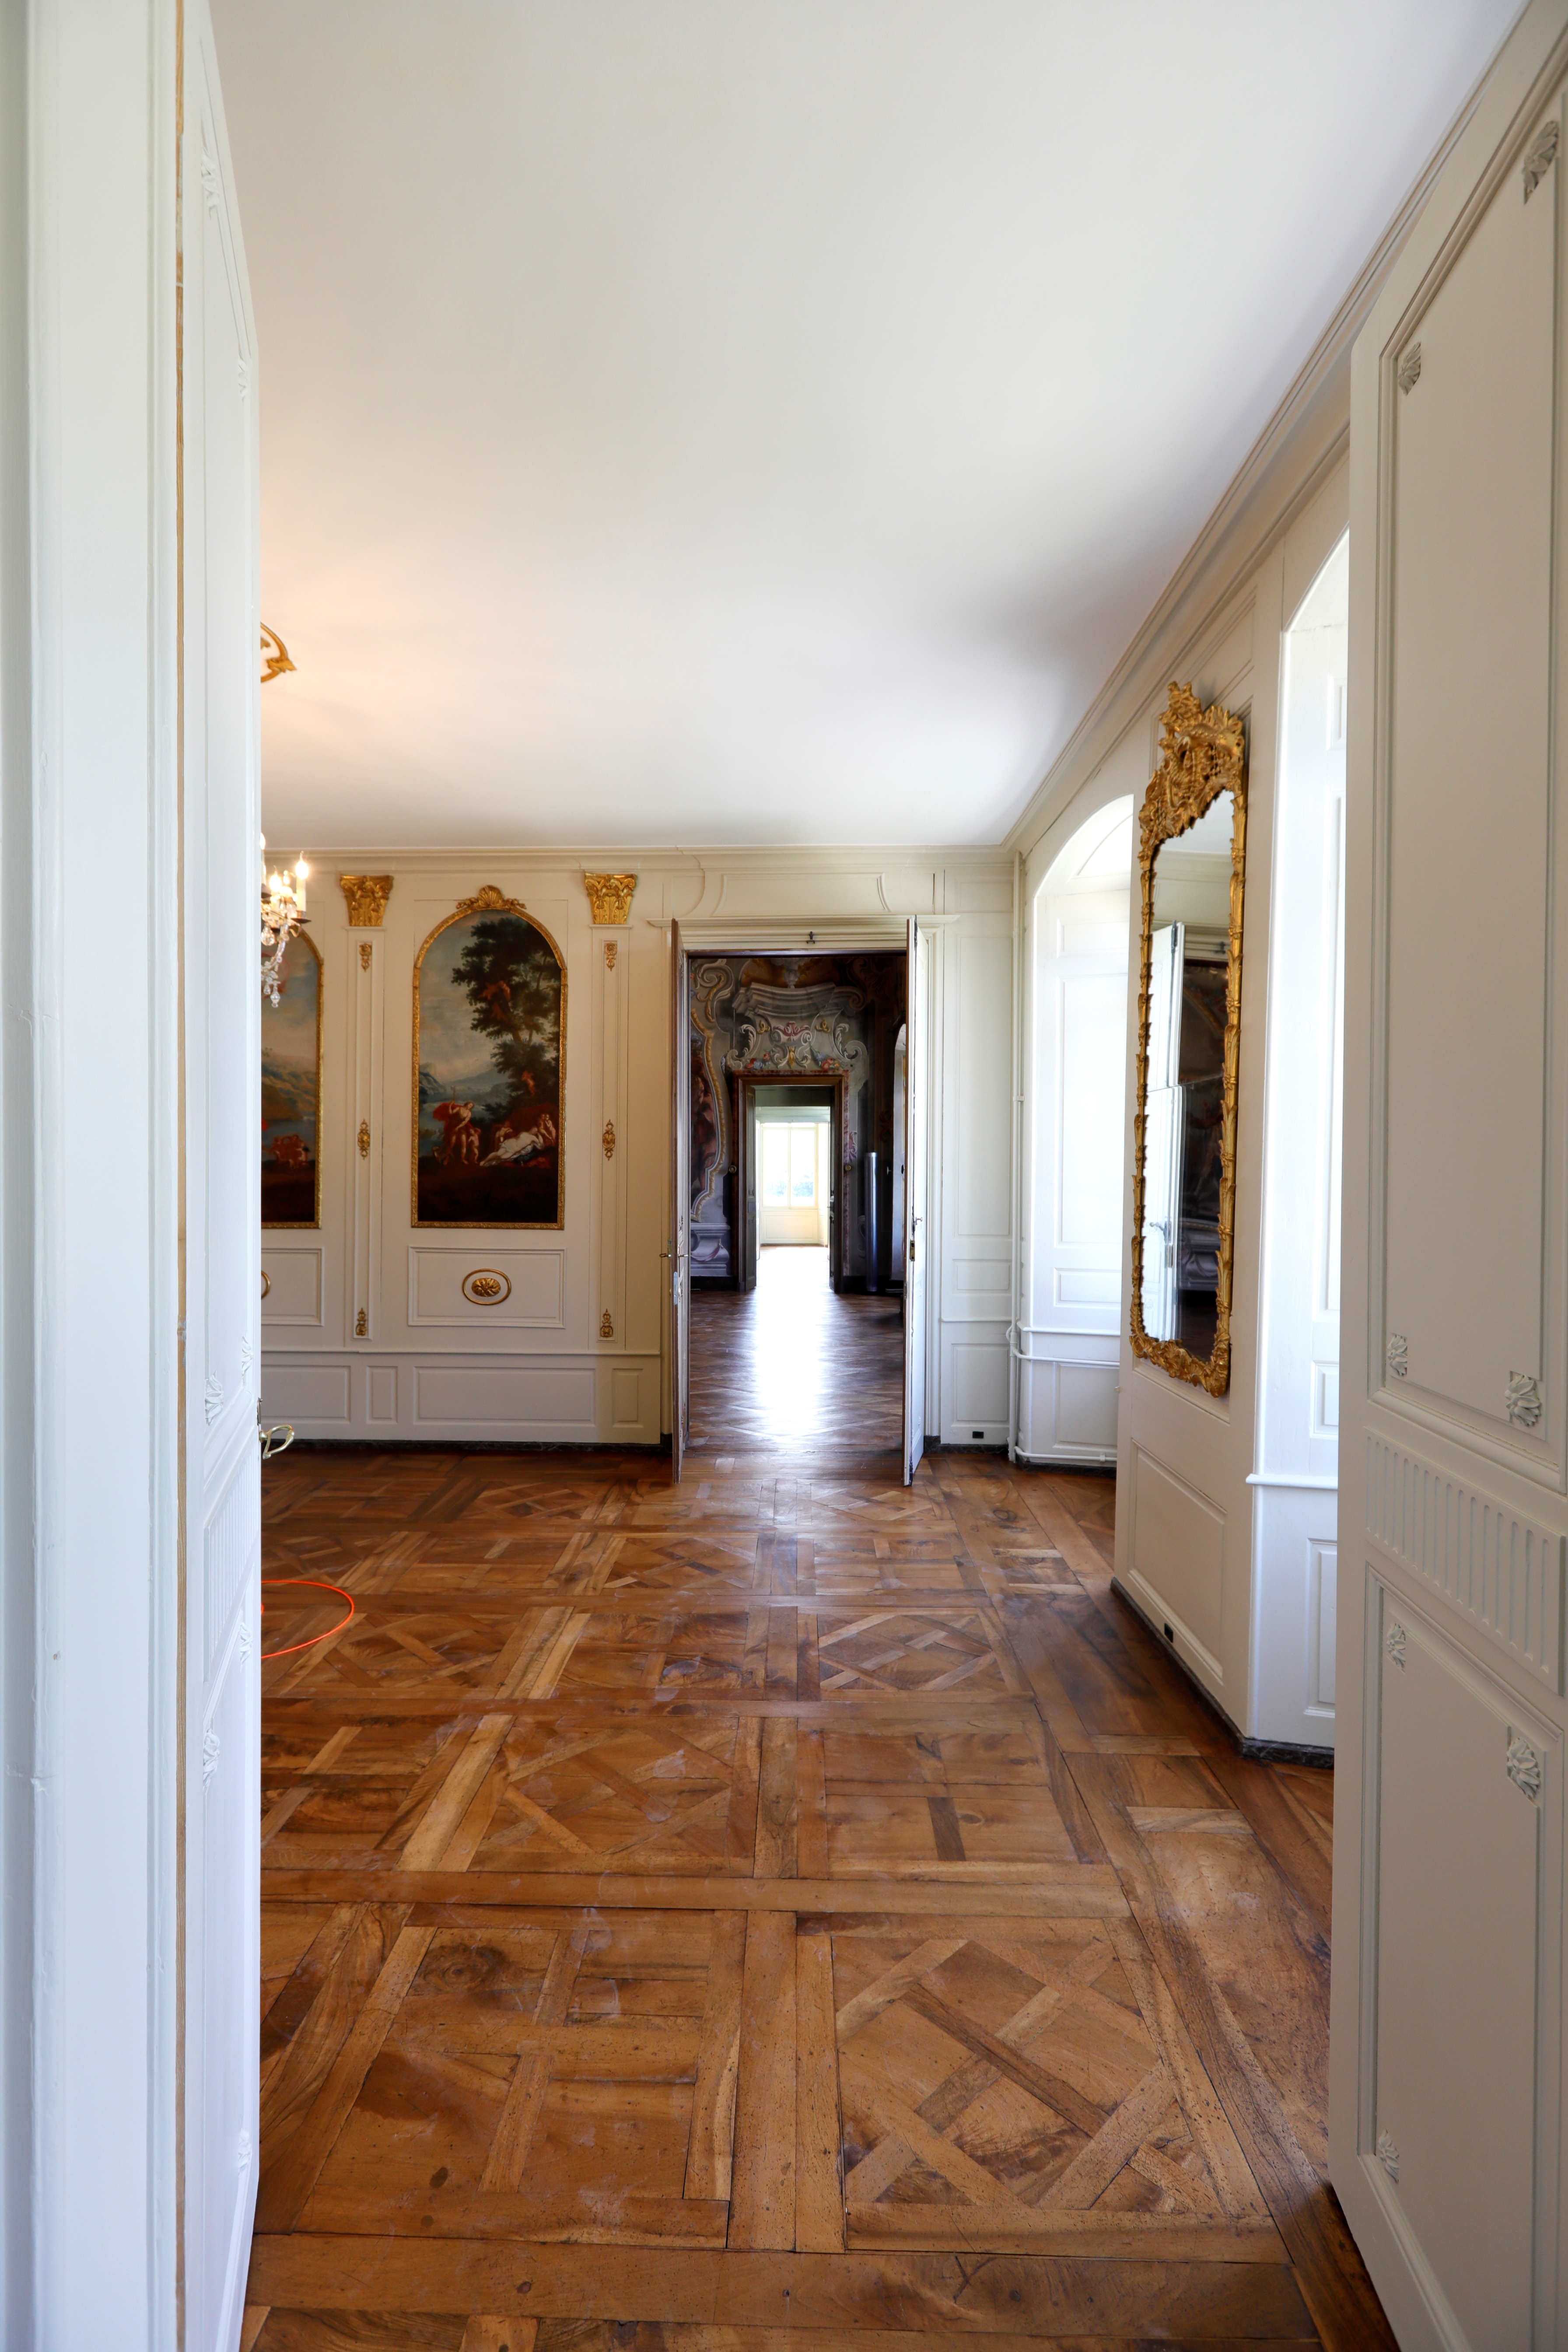 Plus l’enfilade de salons est grande, plus c’est un signe de richesse dans les châteaux du 18ème siècle. Dans le cas présent, l’enfilade se termine par un miroir qui en double la longueur.